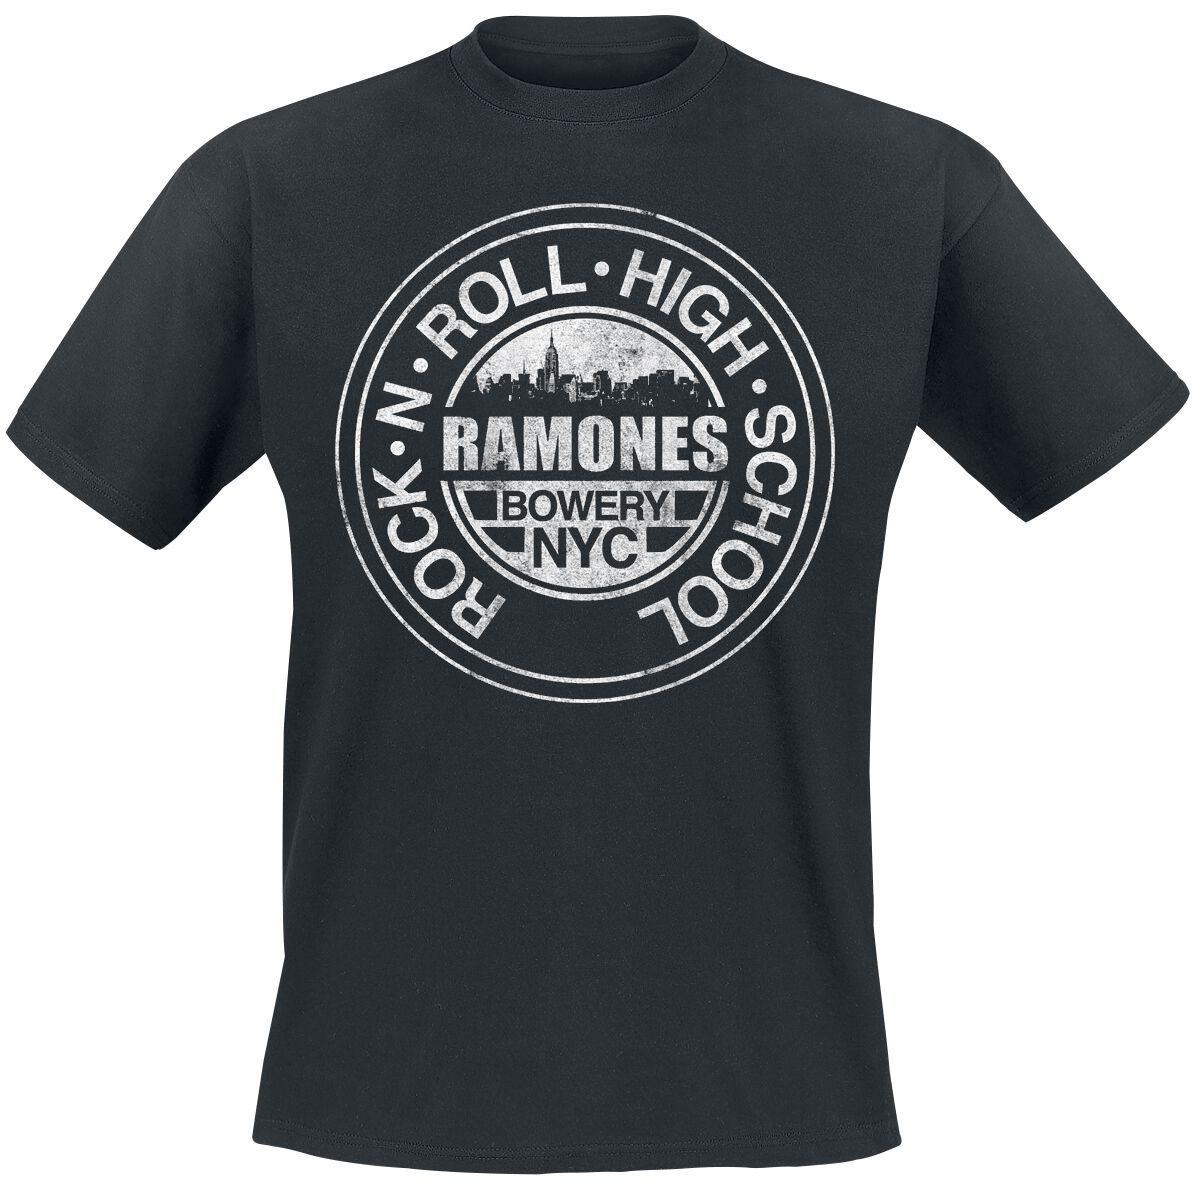 Ramones T-Shirt - Bowery NYC - L bis 5XL - für Männer - Größe XL - schwarz  - Lizenziertes Merchandise!